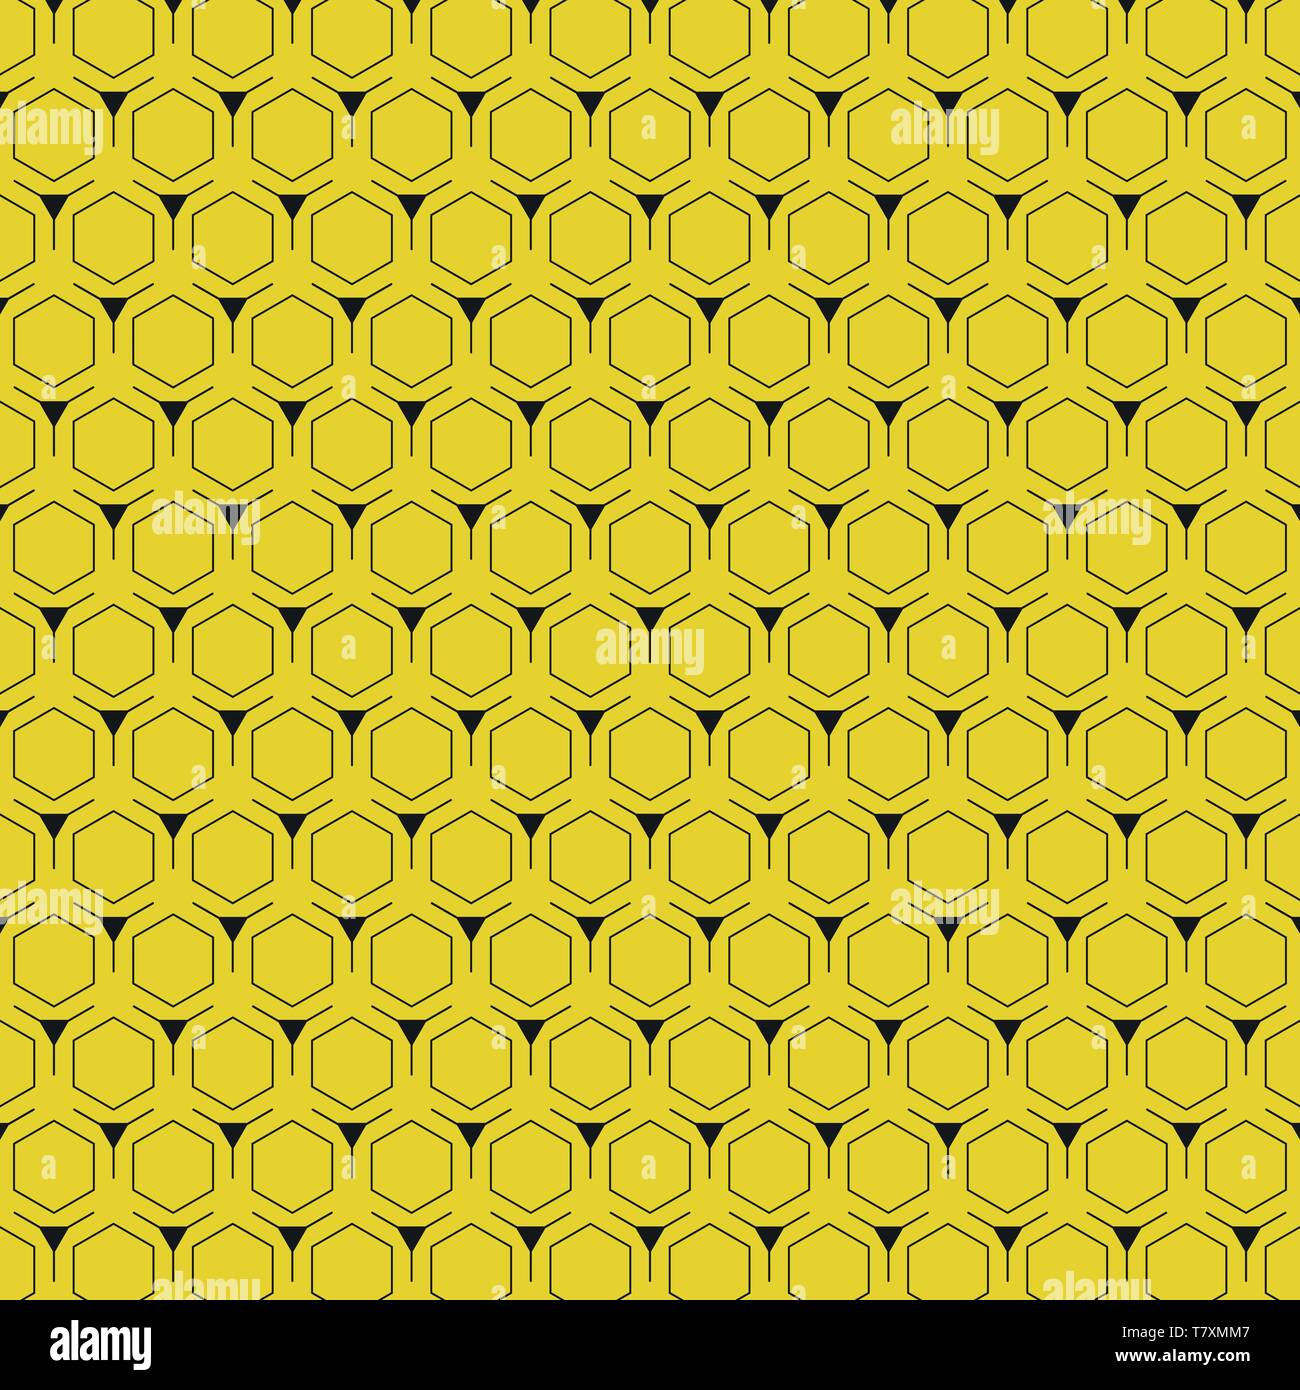 Résumé fond jaune avec motif hexagonal design moderne. Vous pouvez utiliser pour poster, pattern design, artwork. illustration vector eps10 Illustration de Vecteur